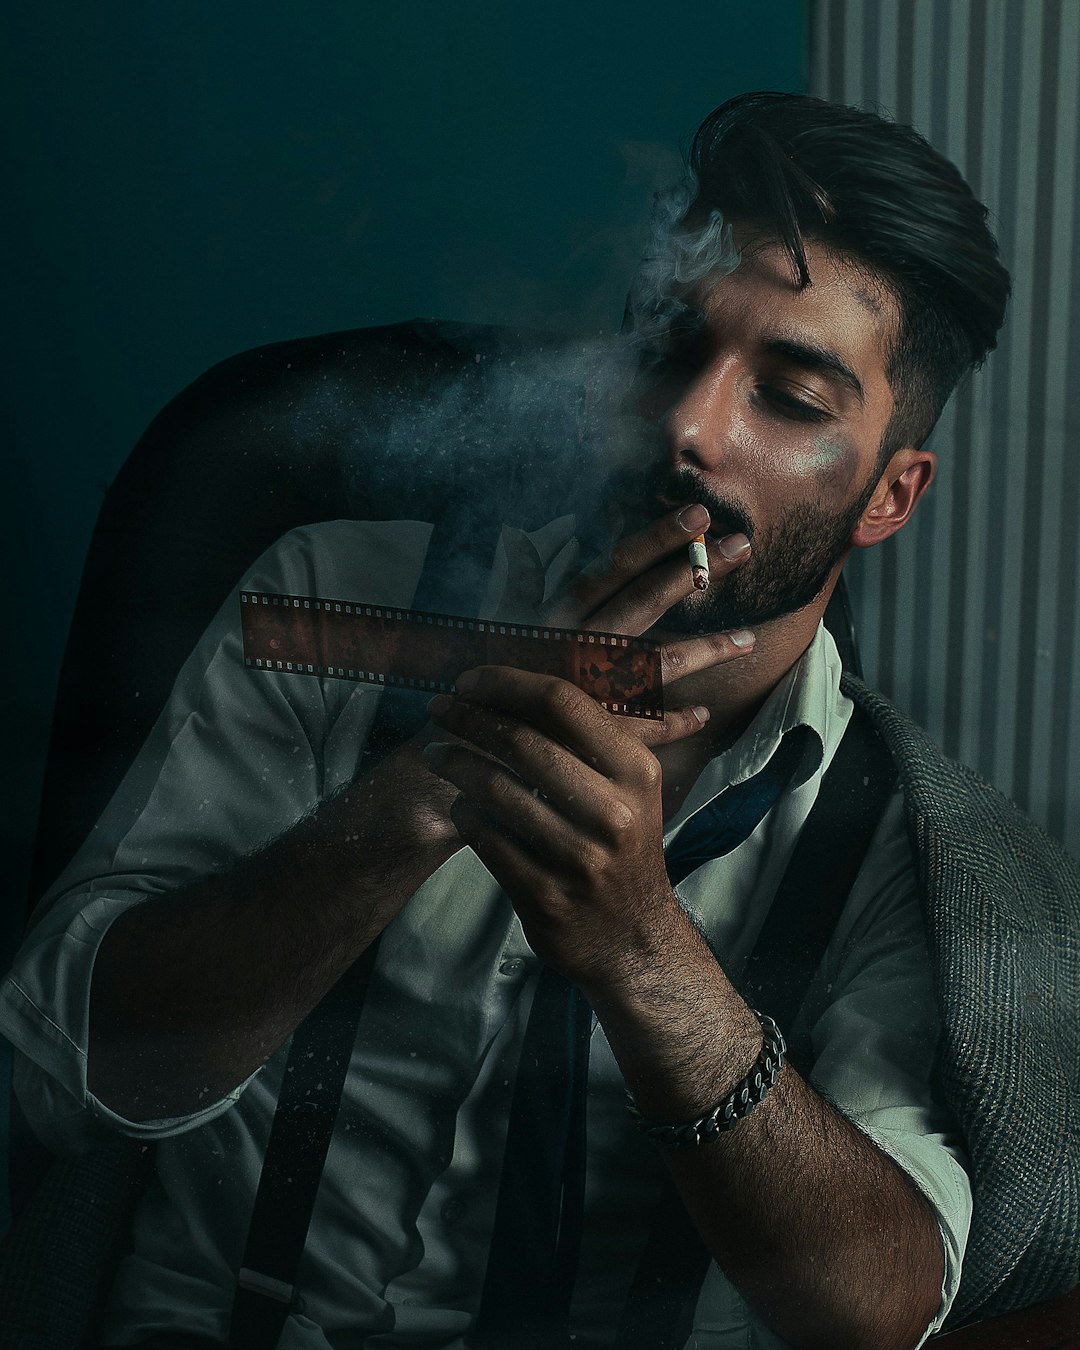 man smoking cigarette wearing gray suit